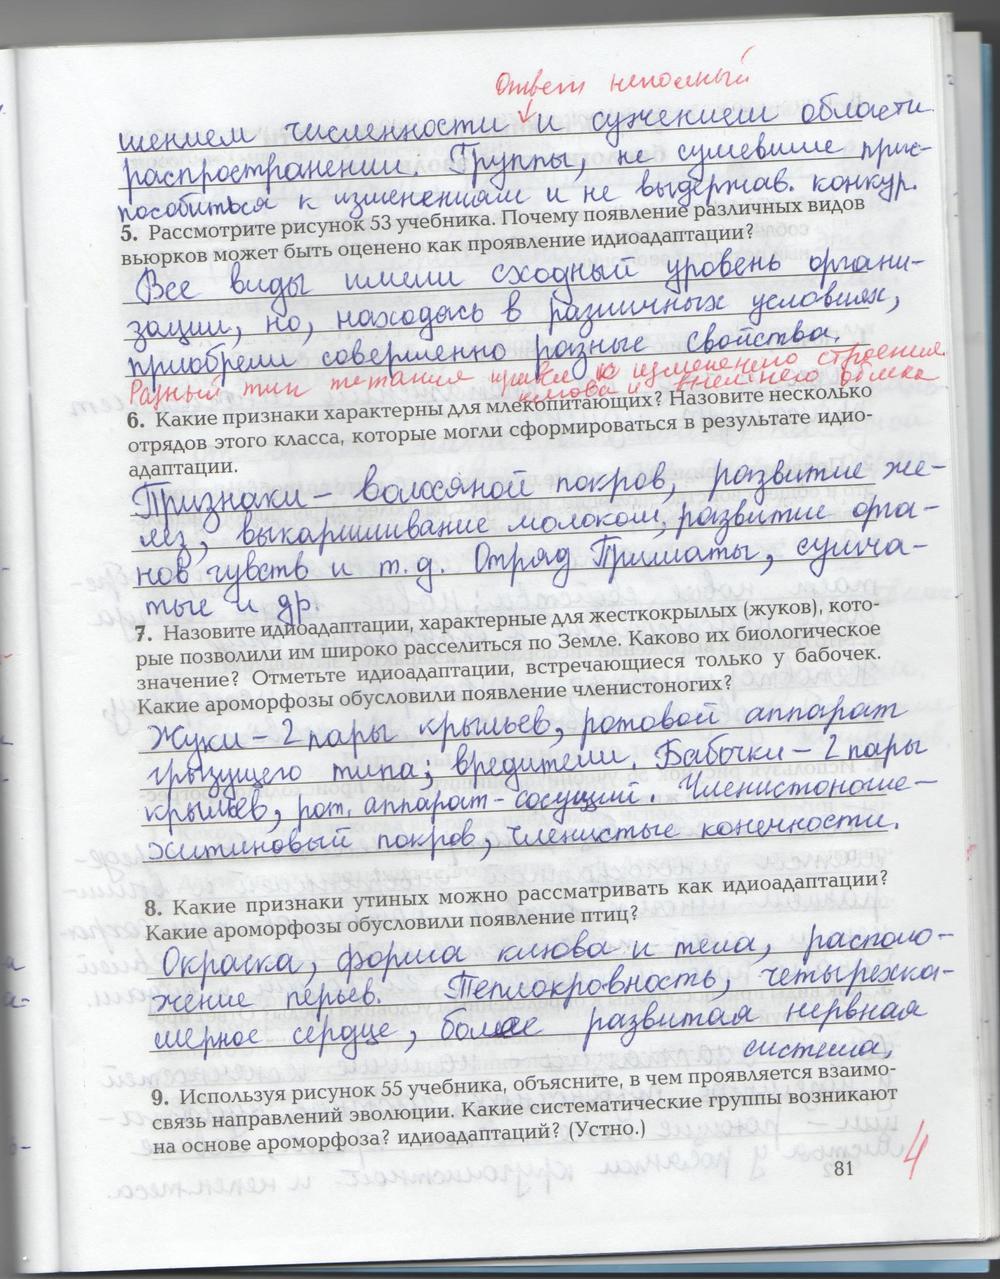 гдз 9 класс рабочая тетрадь страница 81 биология Козлова, Кучменко